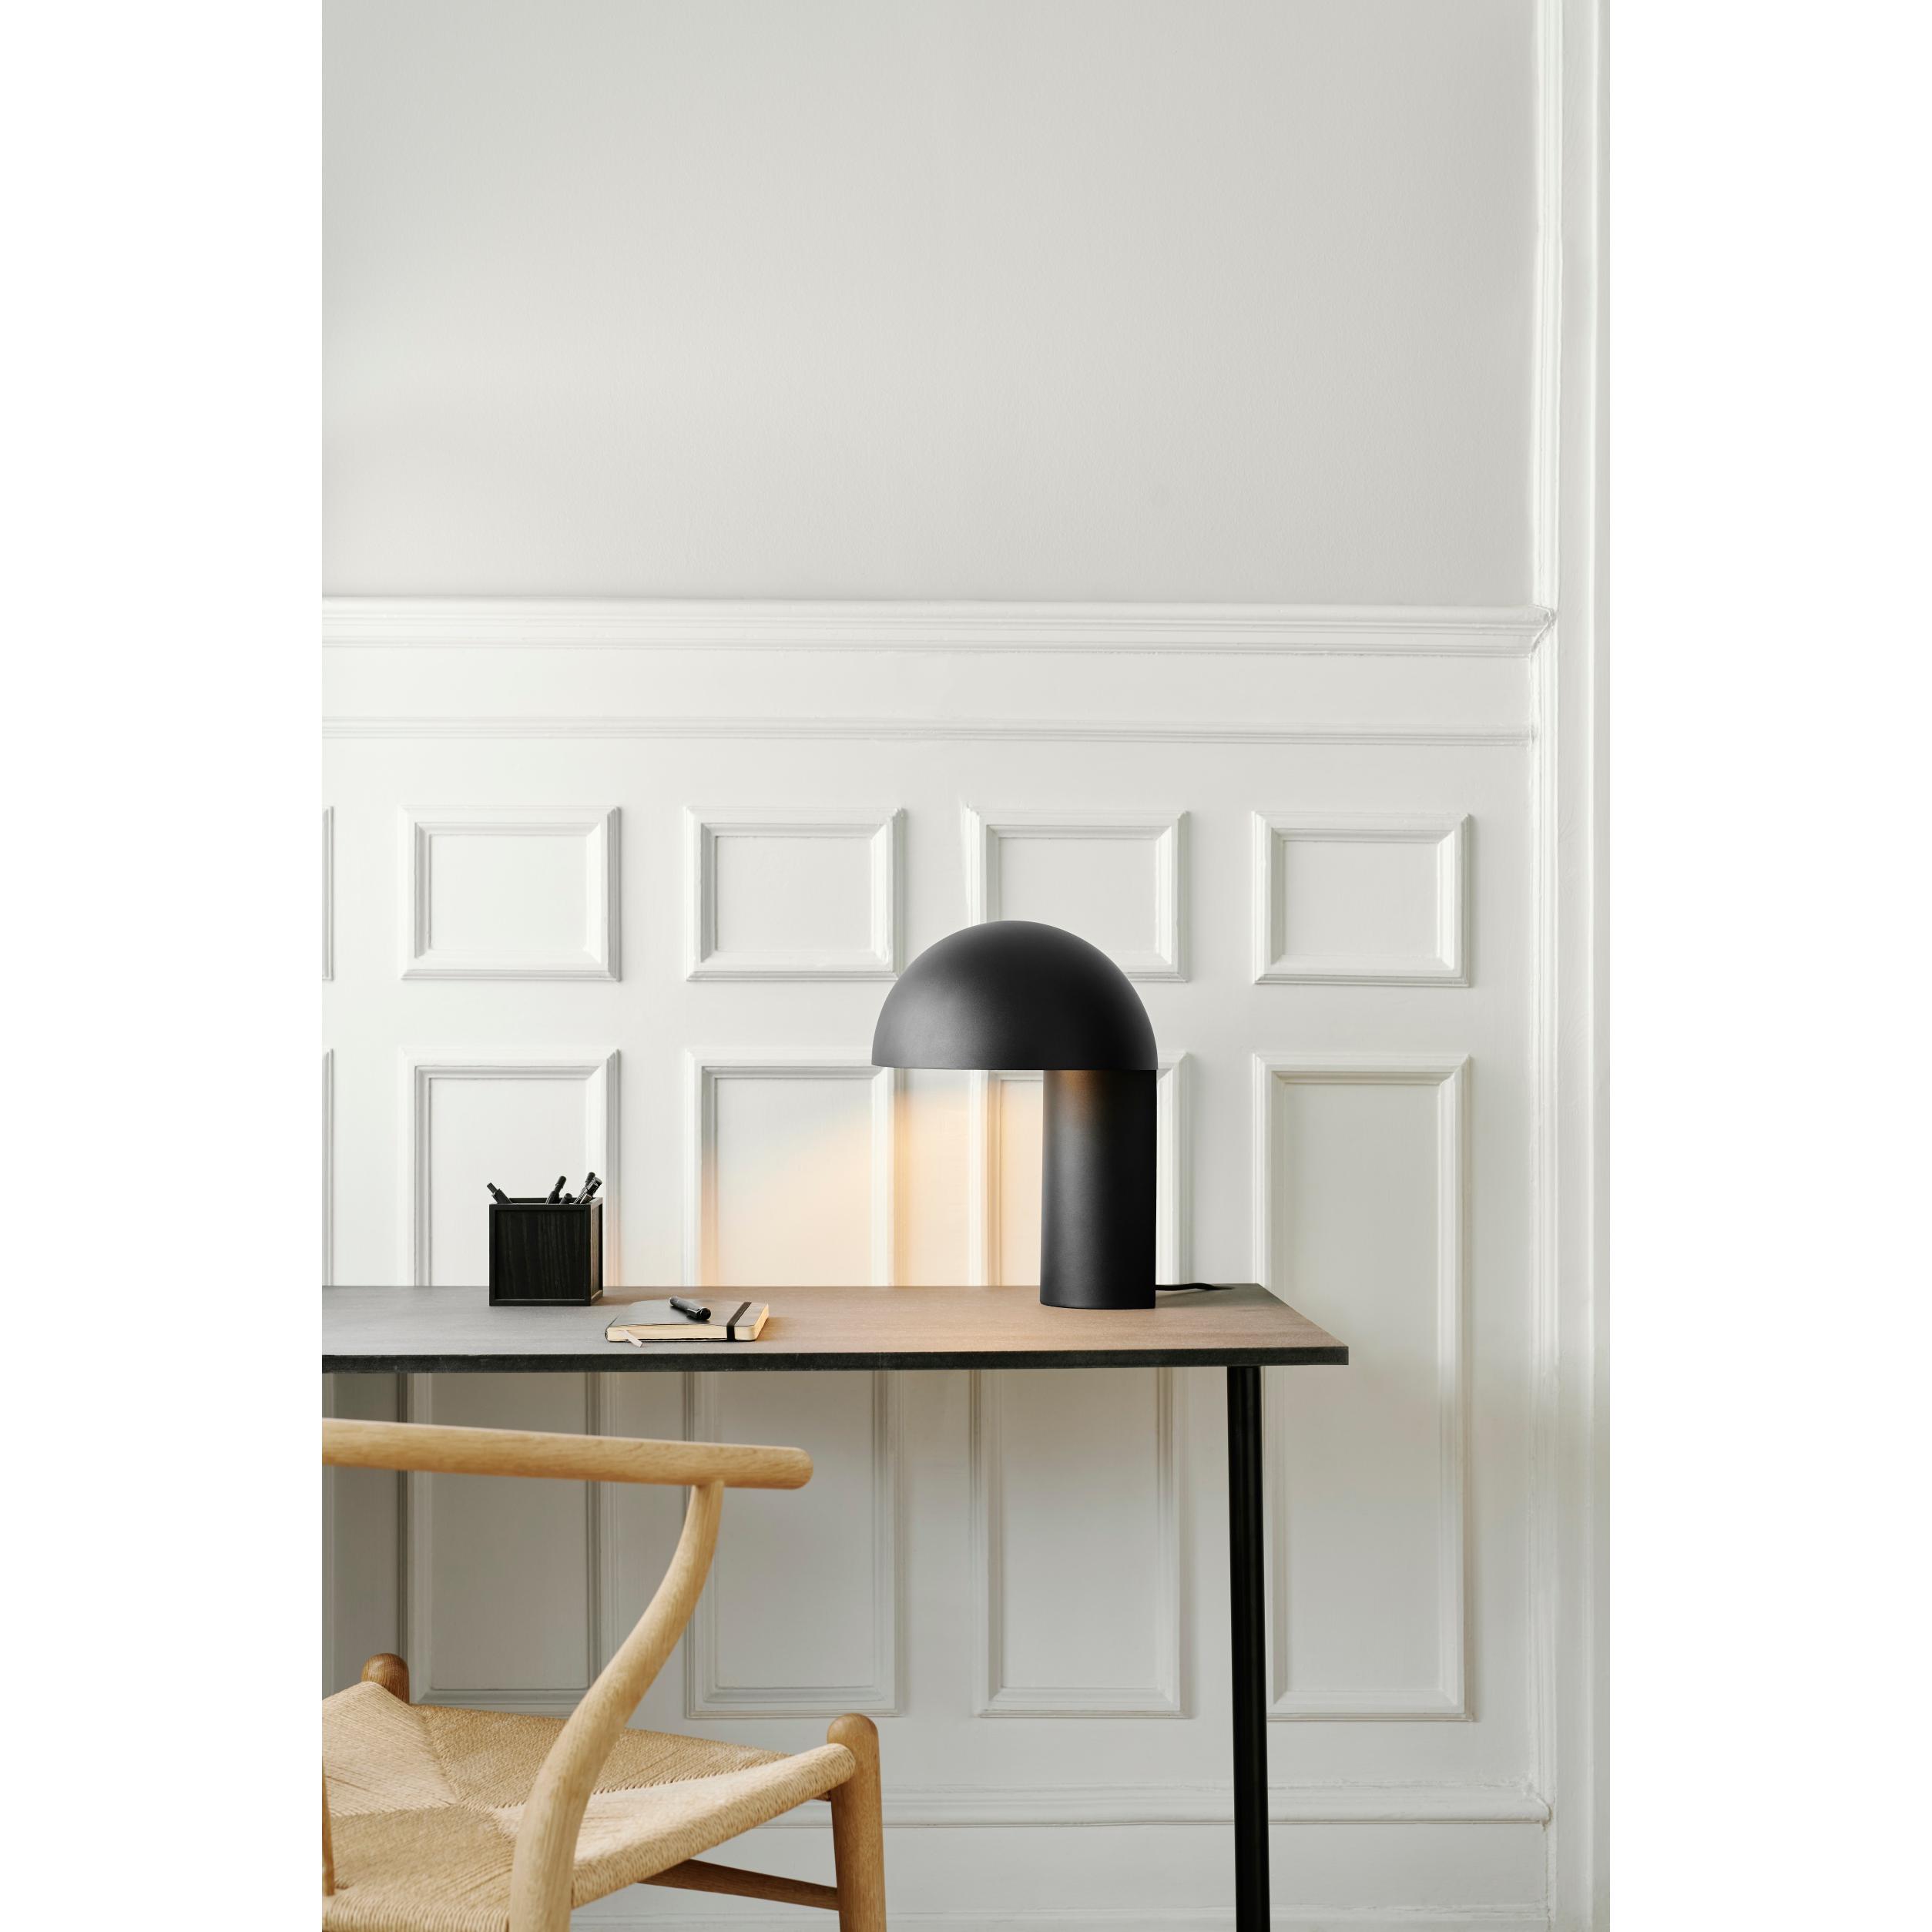 Gejst Lampe de table de leyer noir, 40 cm